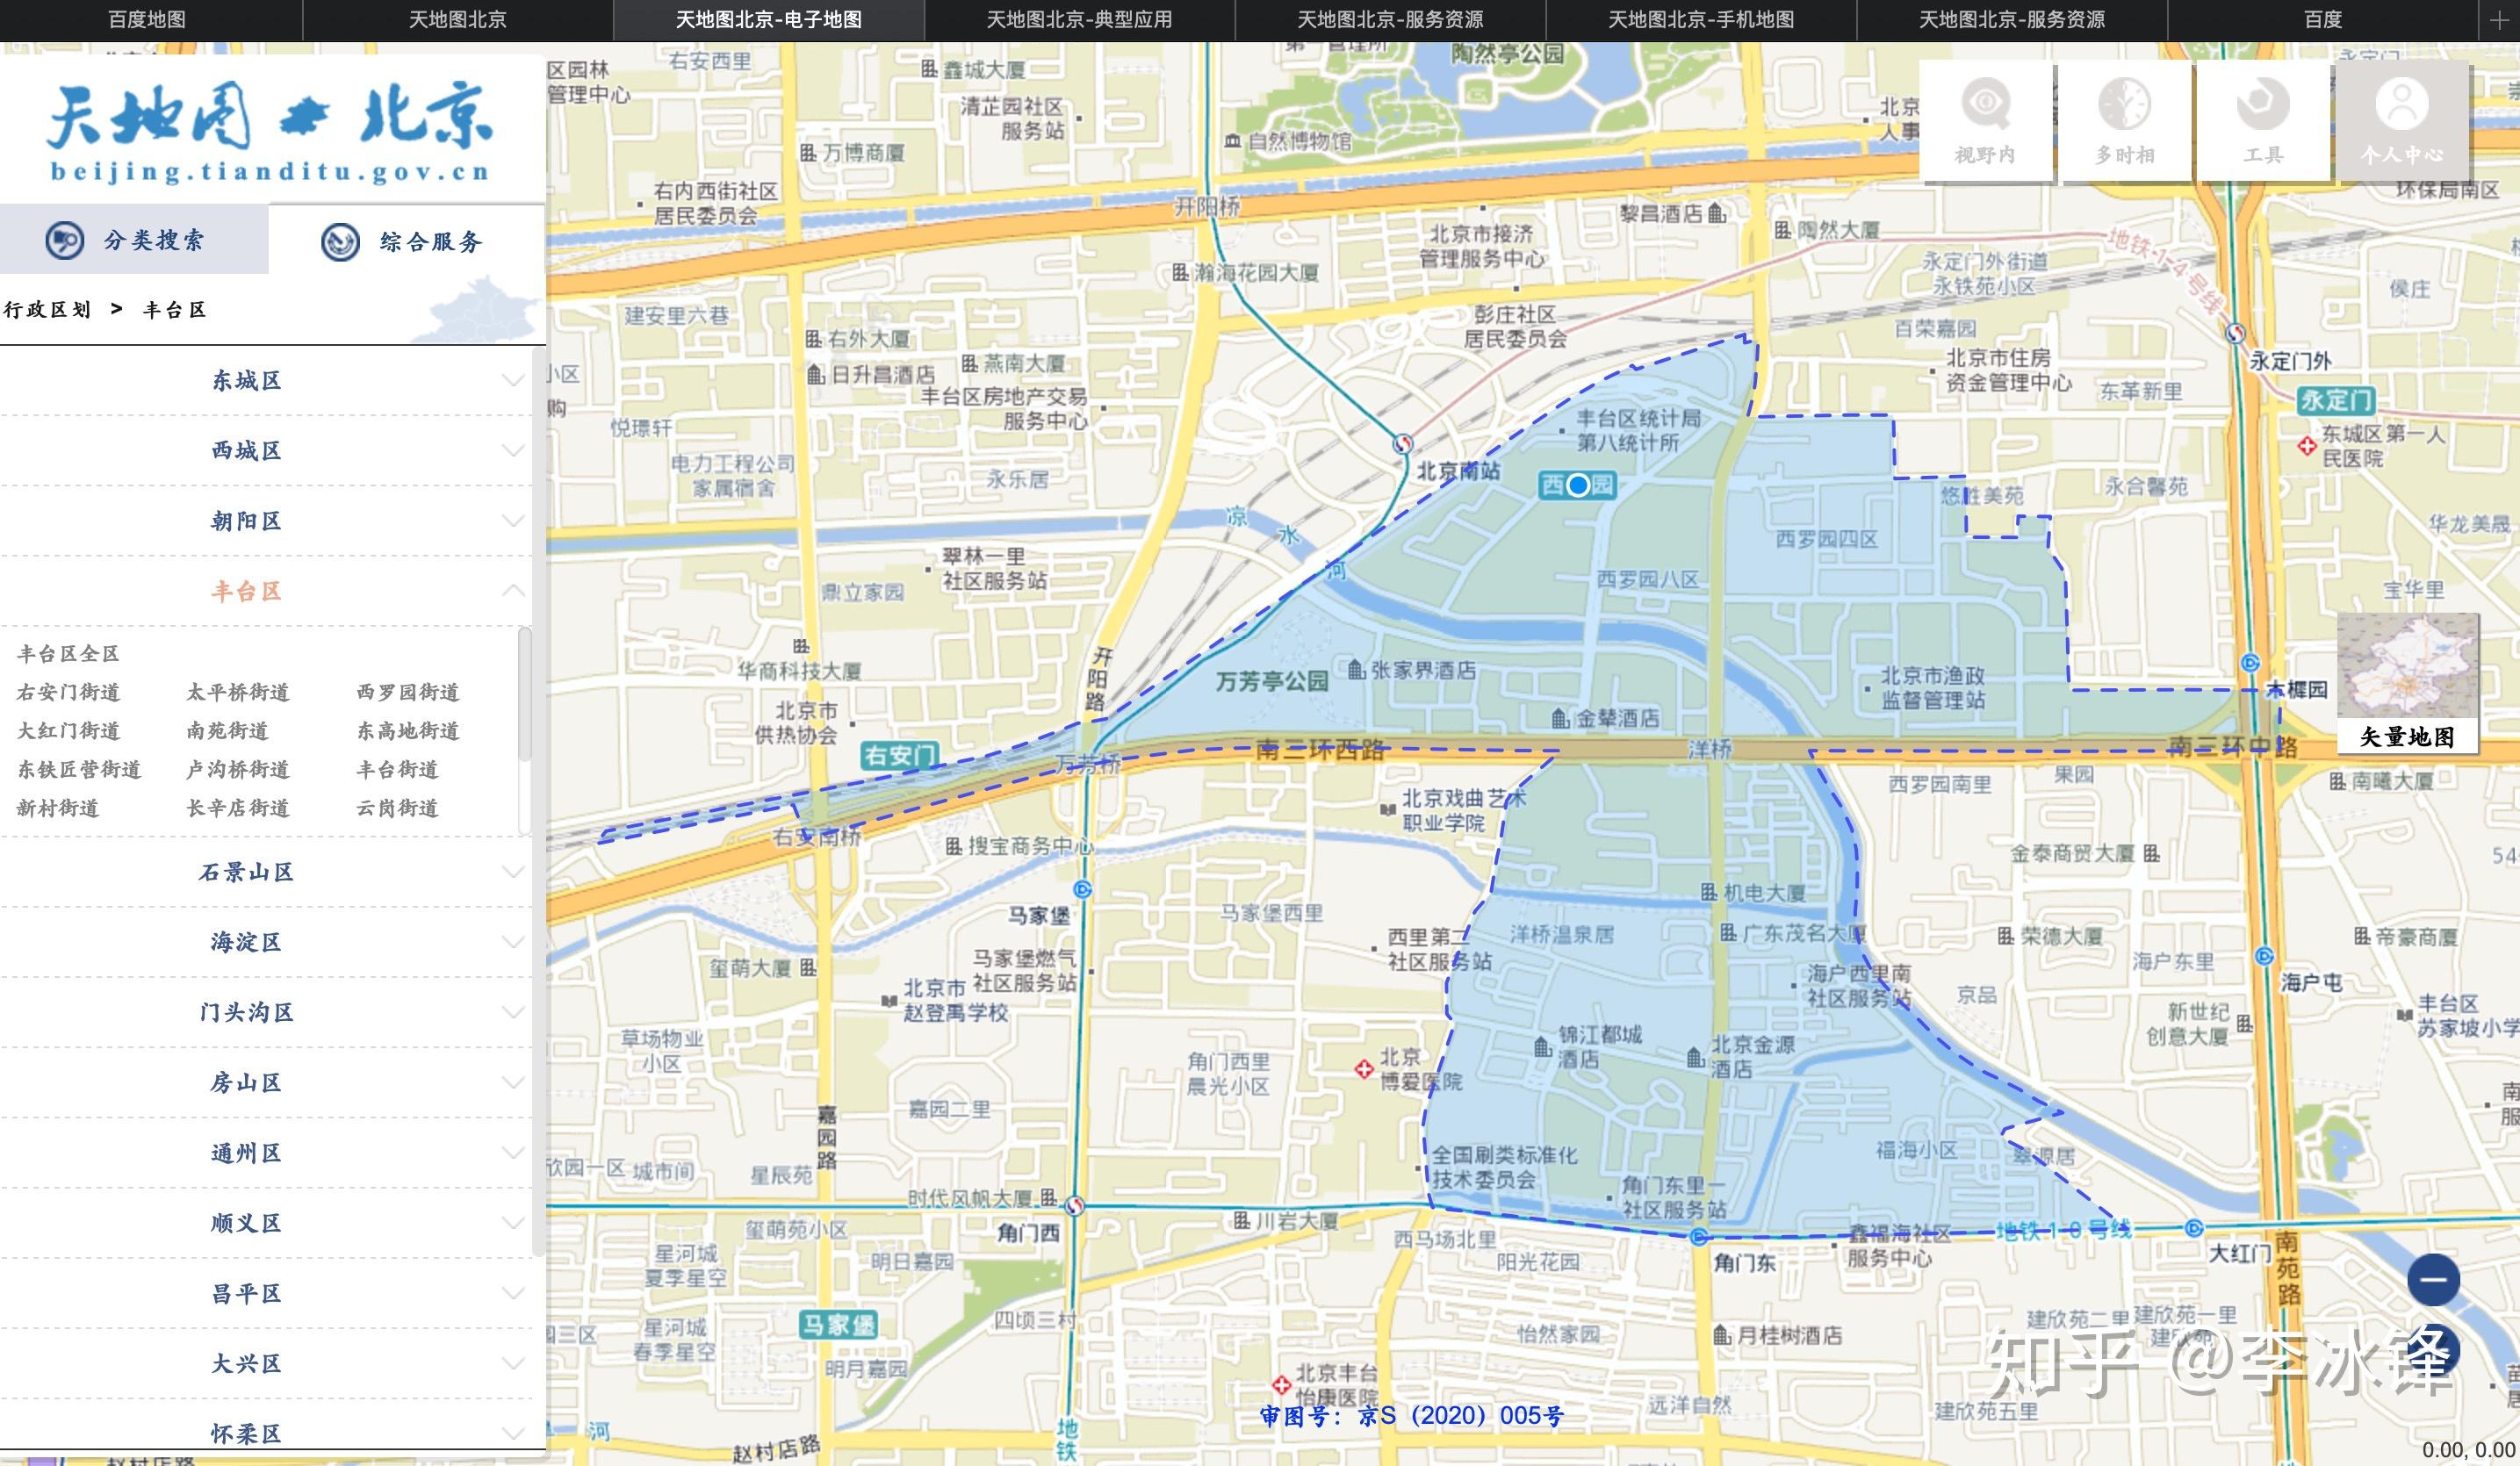 北京南站 属于哪个街道?